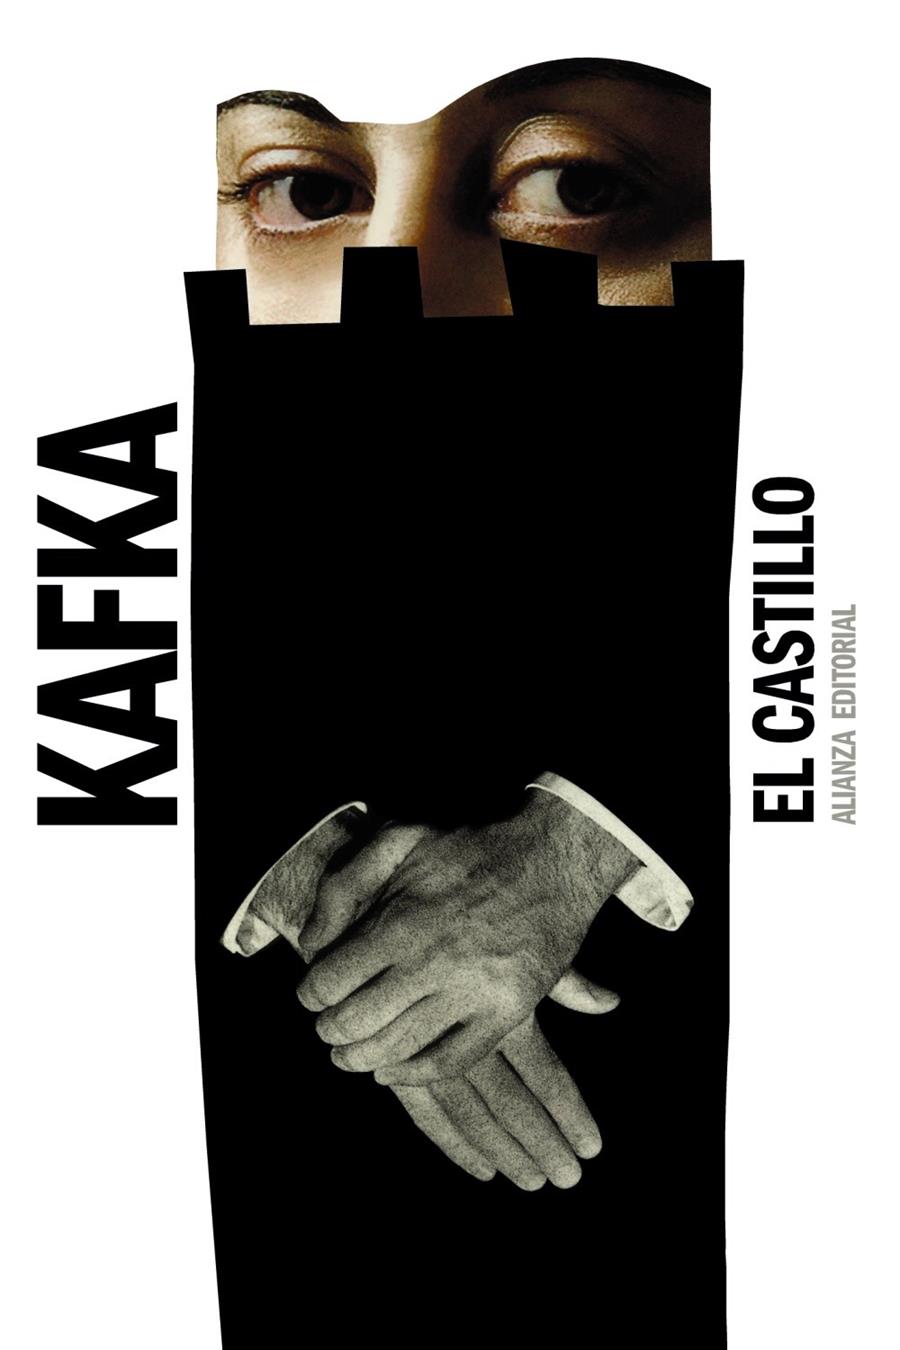 El castillo | Kafka, Franz | Cooperativa autogestionària